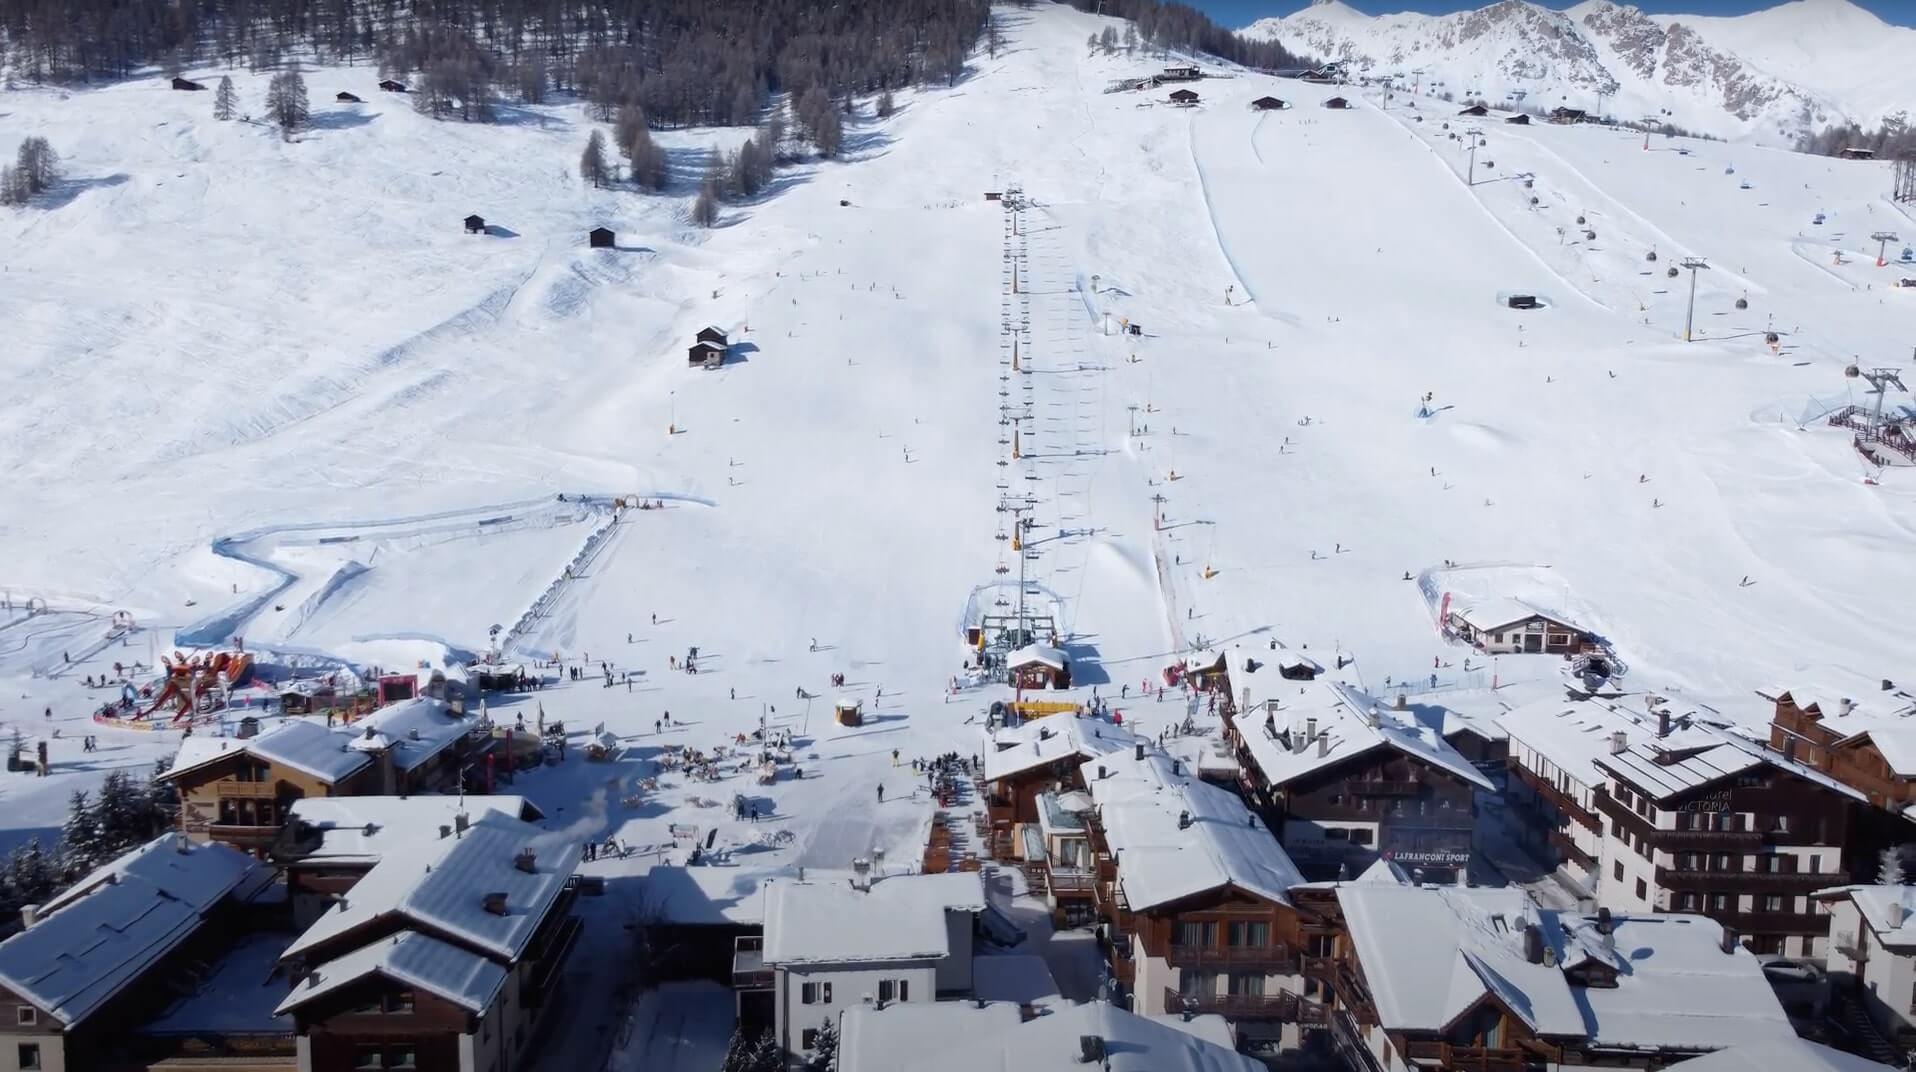 livigno ski area in the alps: free ski